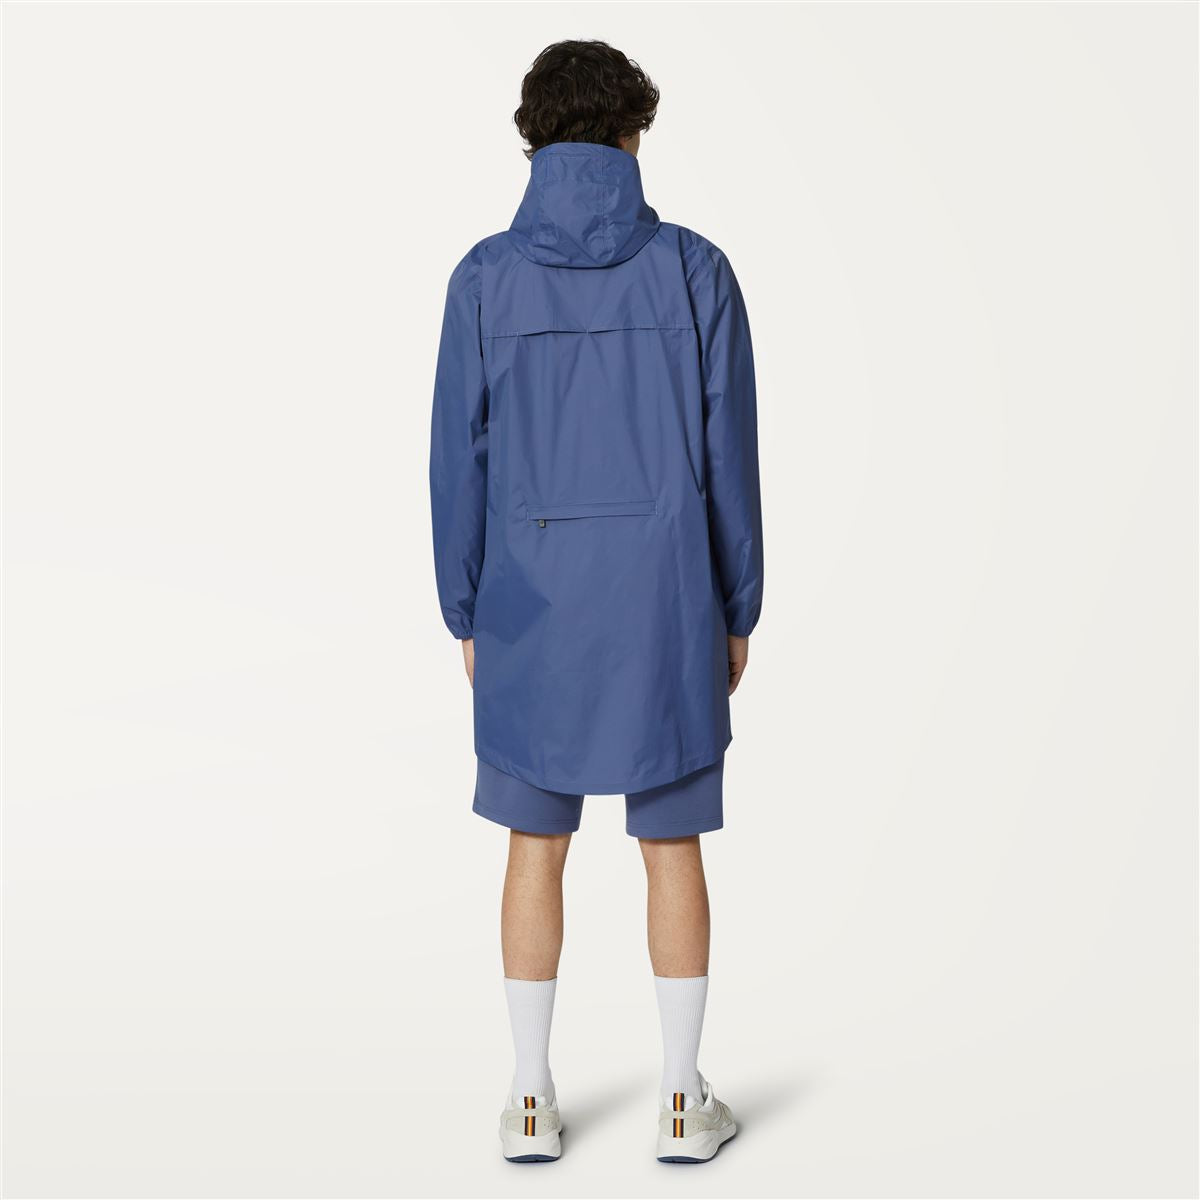 Eiffel - Unisex Waterproof Packable Long Rain Jacket in Blue Indigo